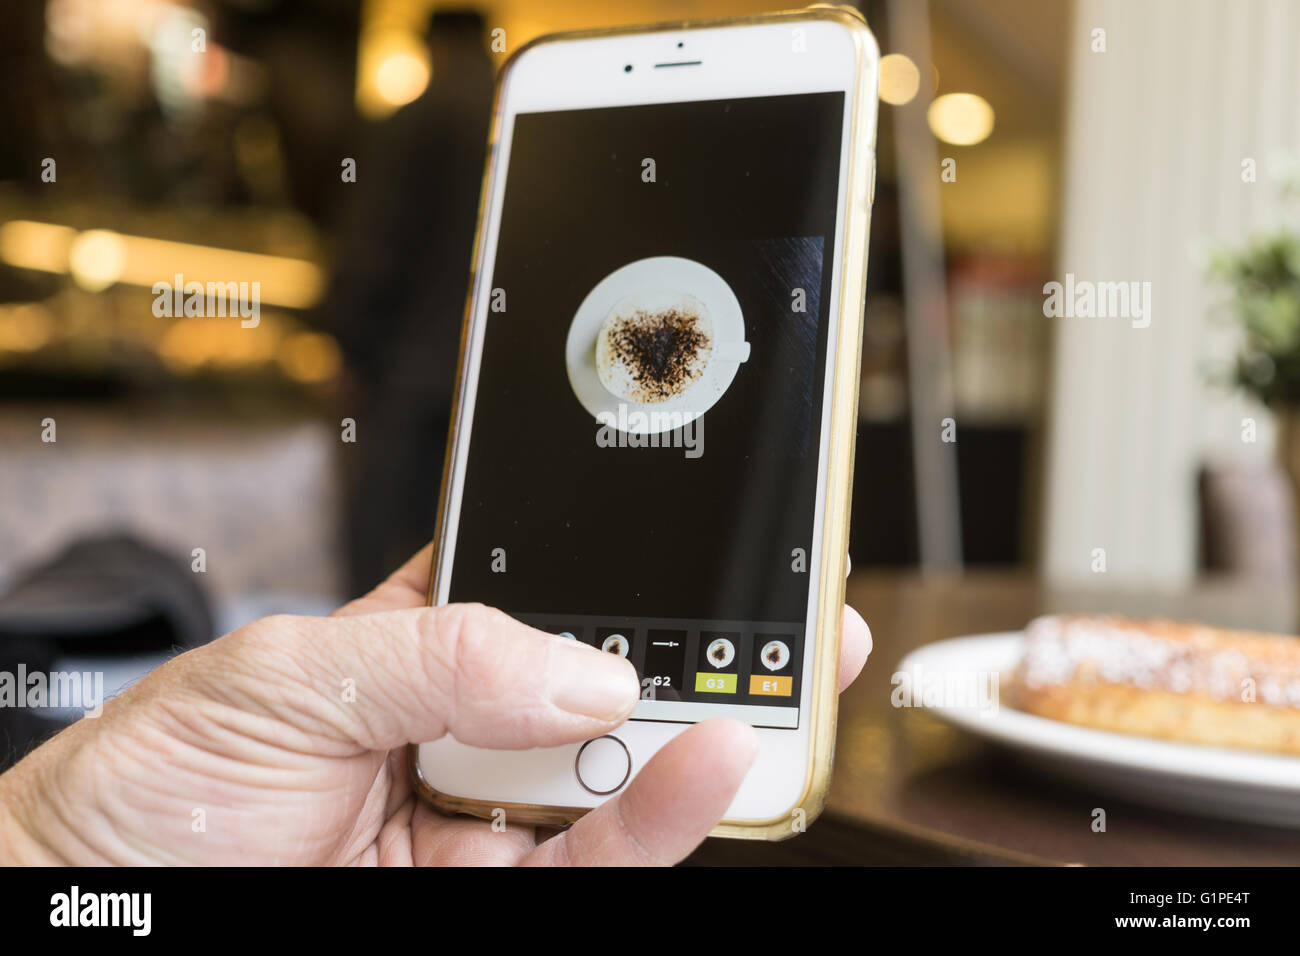 BERLIN, ALLEMAGNE - 17 MAI 2016 : l'édition de l'homme son mobile photo d'une tasse de café avec l'iPhone et VSCO Cam app. Banque D'Images